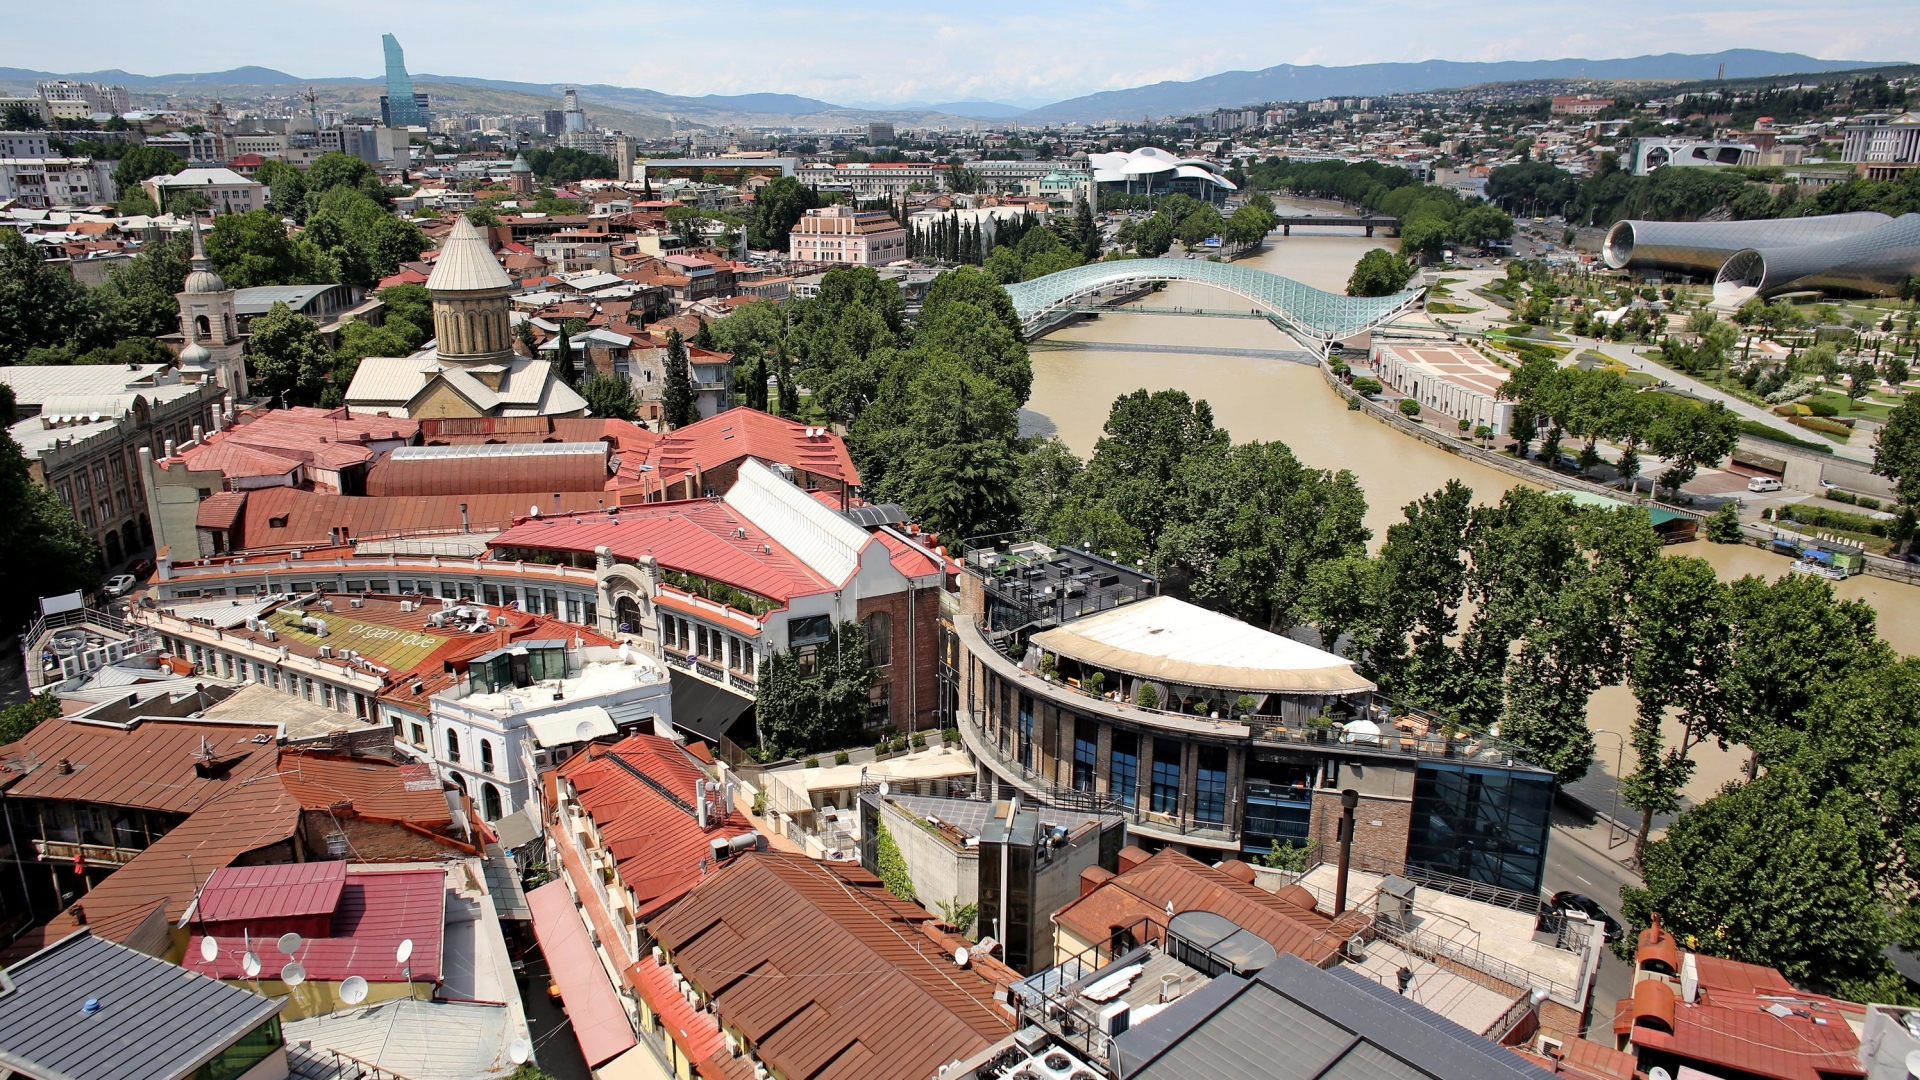 Blick auf die sanierte Altstadt von Tiflis